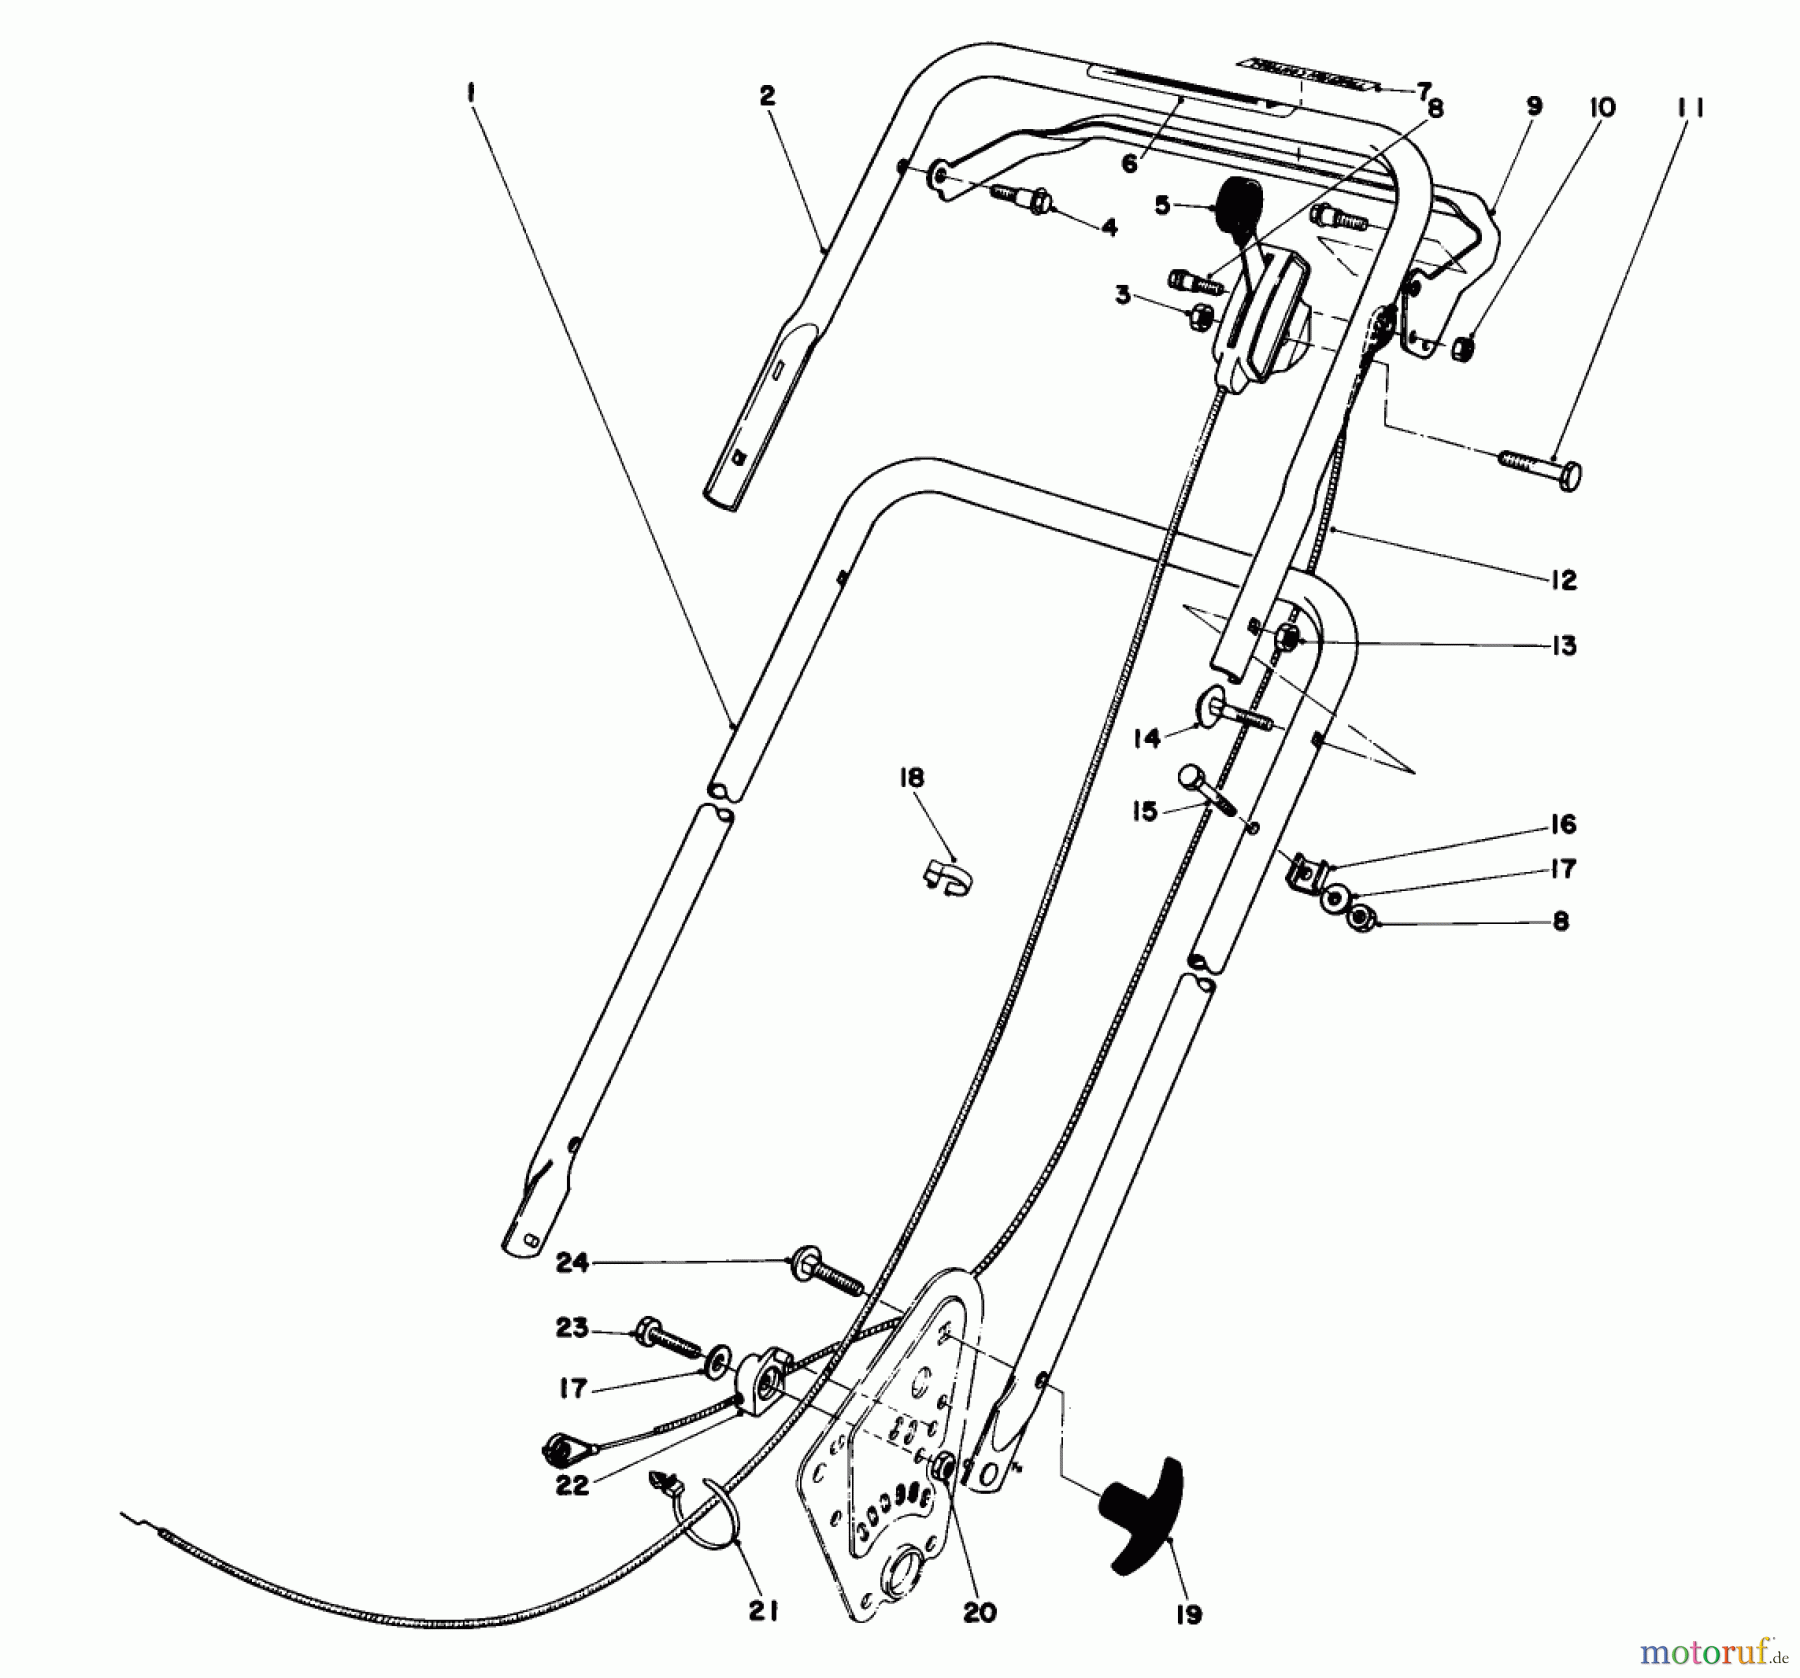  Toro Neu Mowers, Walk-Behind Seite 1 16890 - Toro Lawnmower, 1981 (1000001-1999999) HANDLE ASSEMBLY (MODEL NO. 16890)